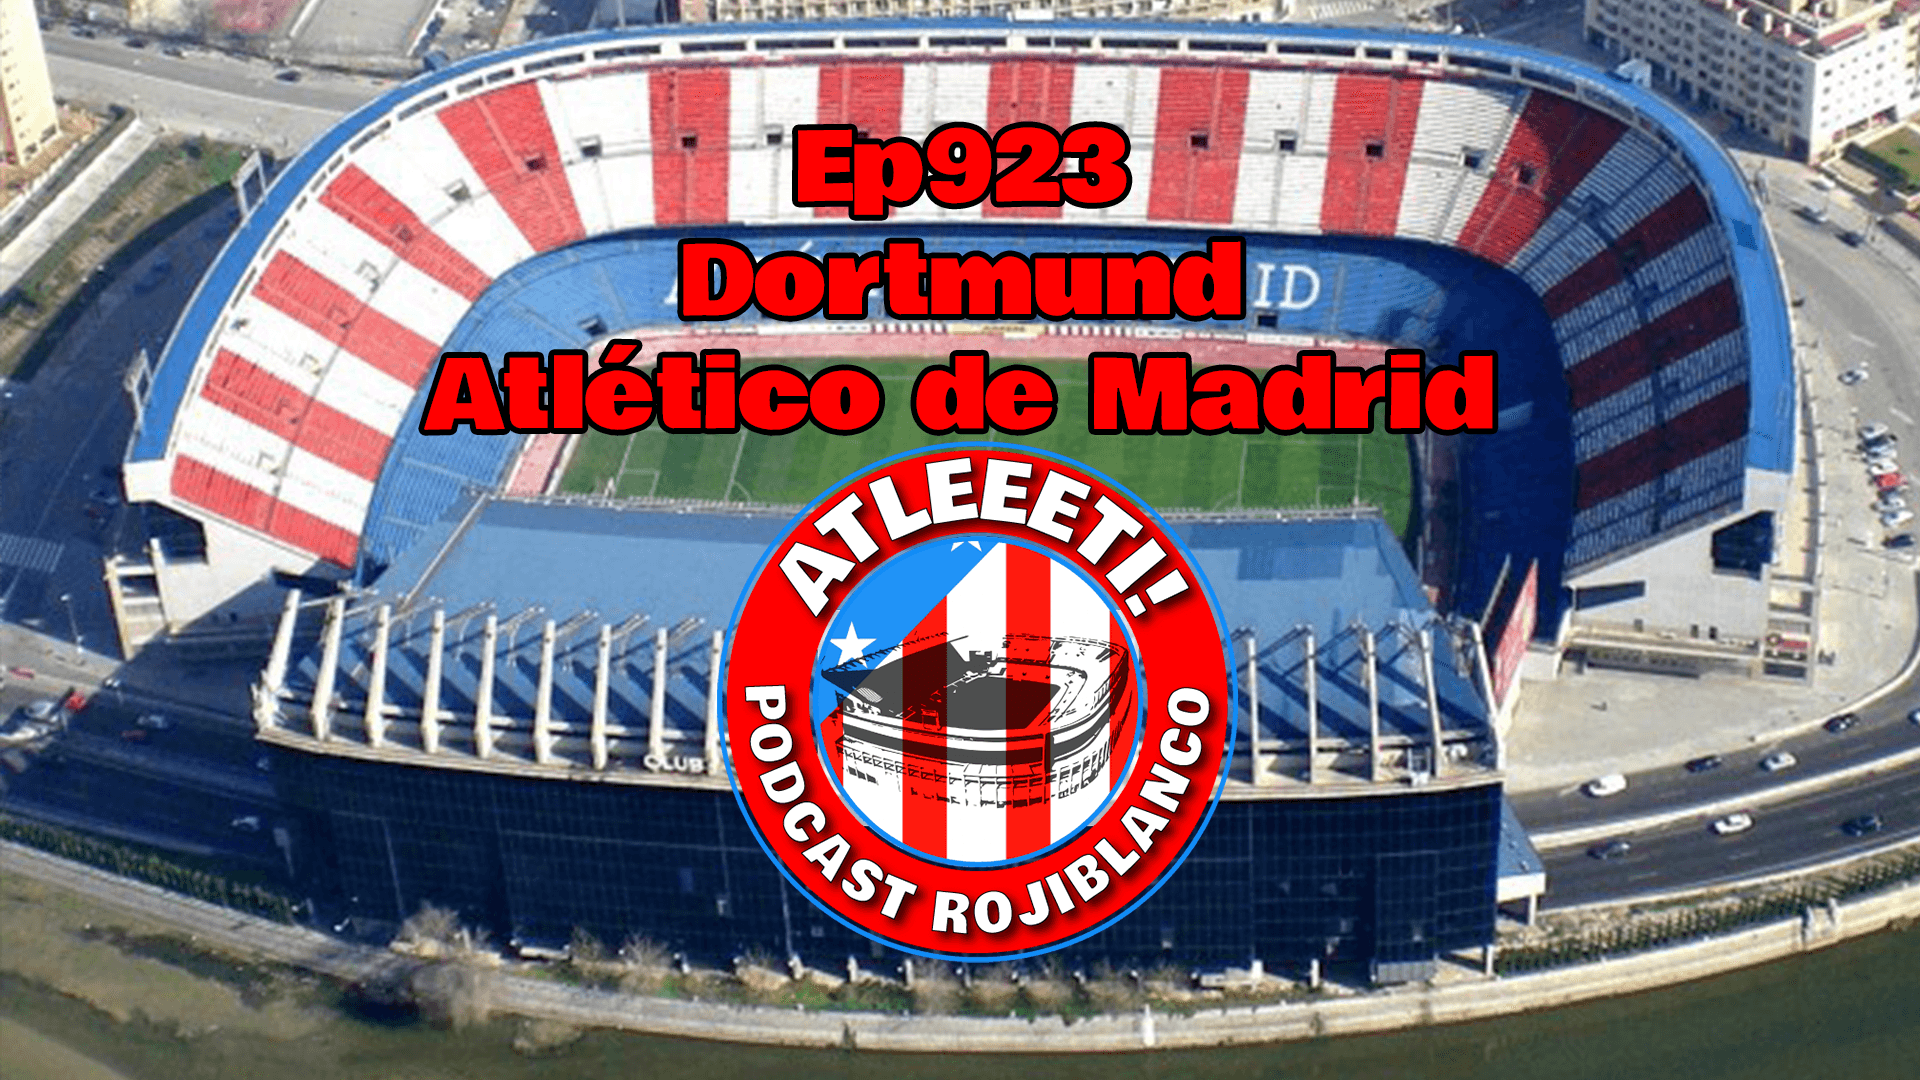 Ep923: Dortmund 4-2 Atlético de Madrid